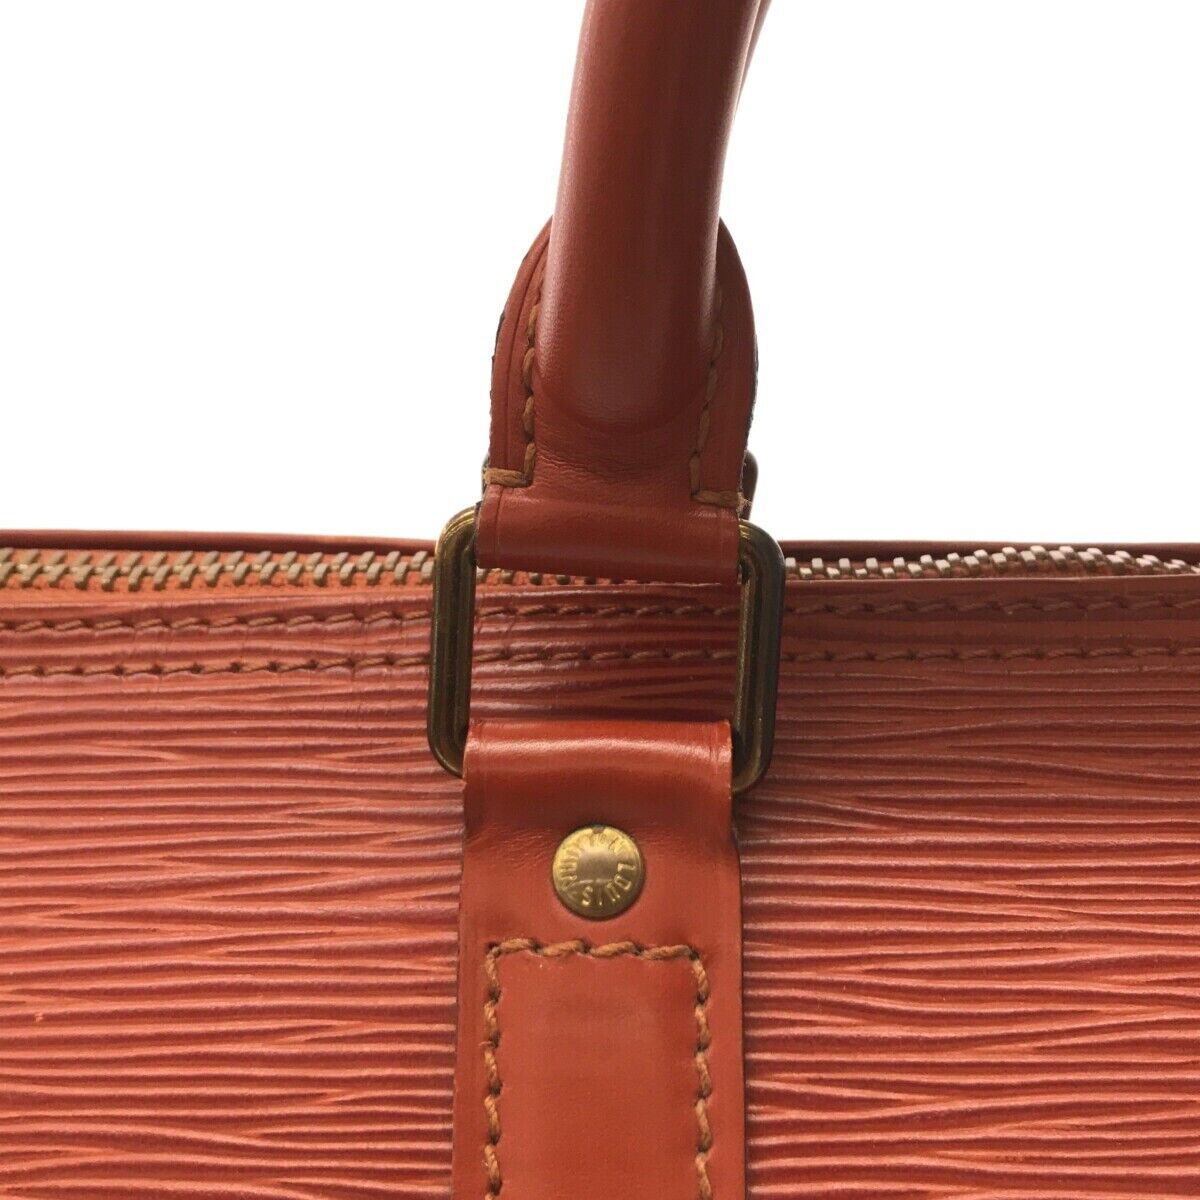 Louis Vuitton Vintage - Epi Speedy 25 Bag - Red - Leather and Epi